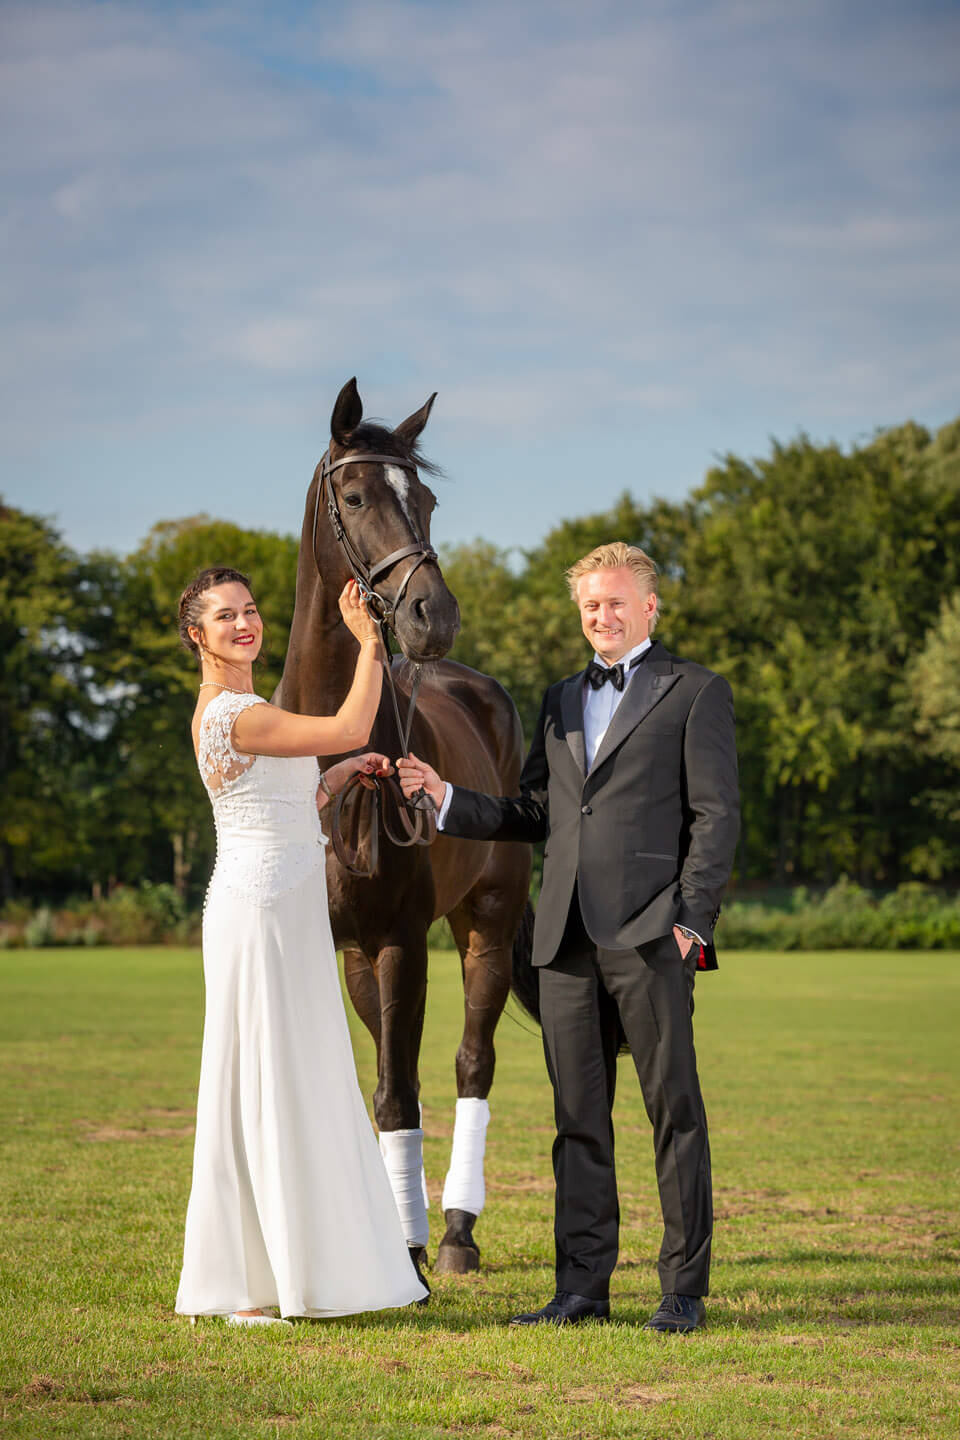 Der Hochzeitsfotograf Florian Läufer hat hier im Polo Club Hamburg das Hochzeitspaar mit einem Pferd fotografiert